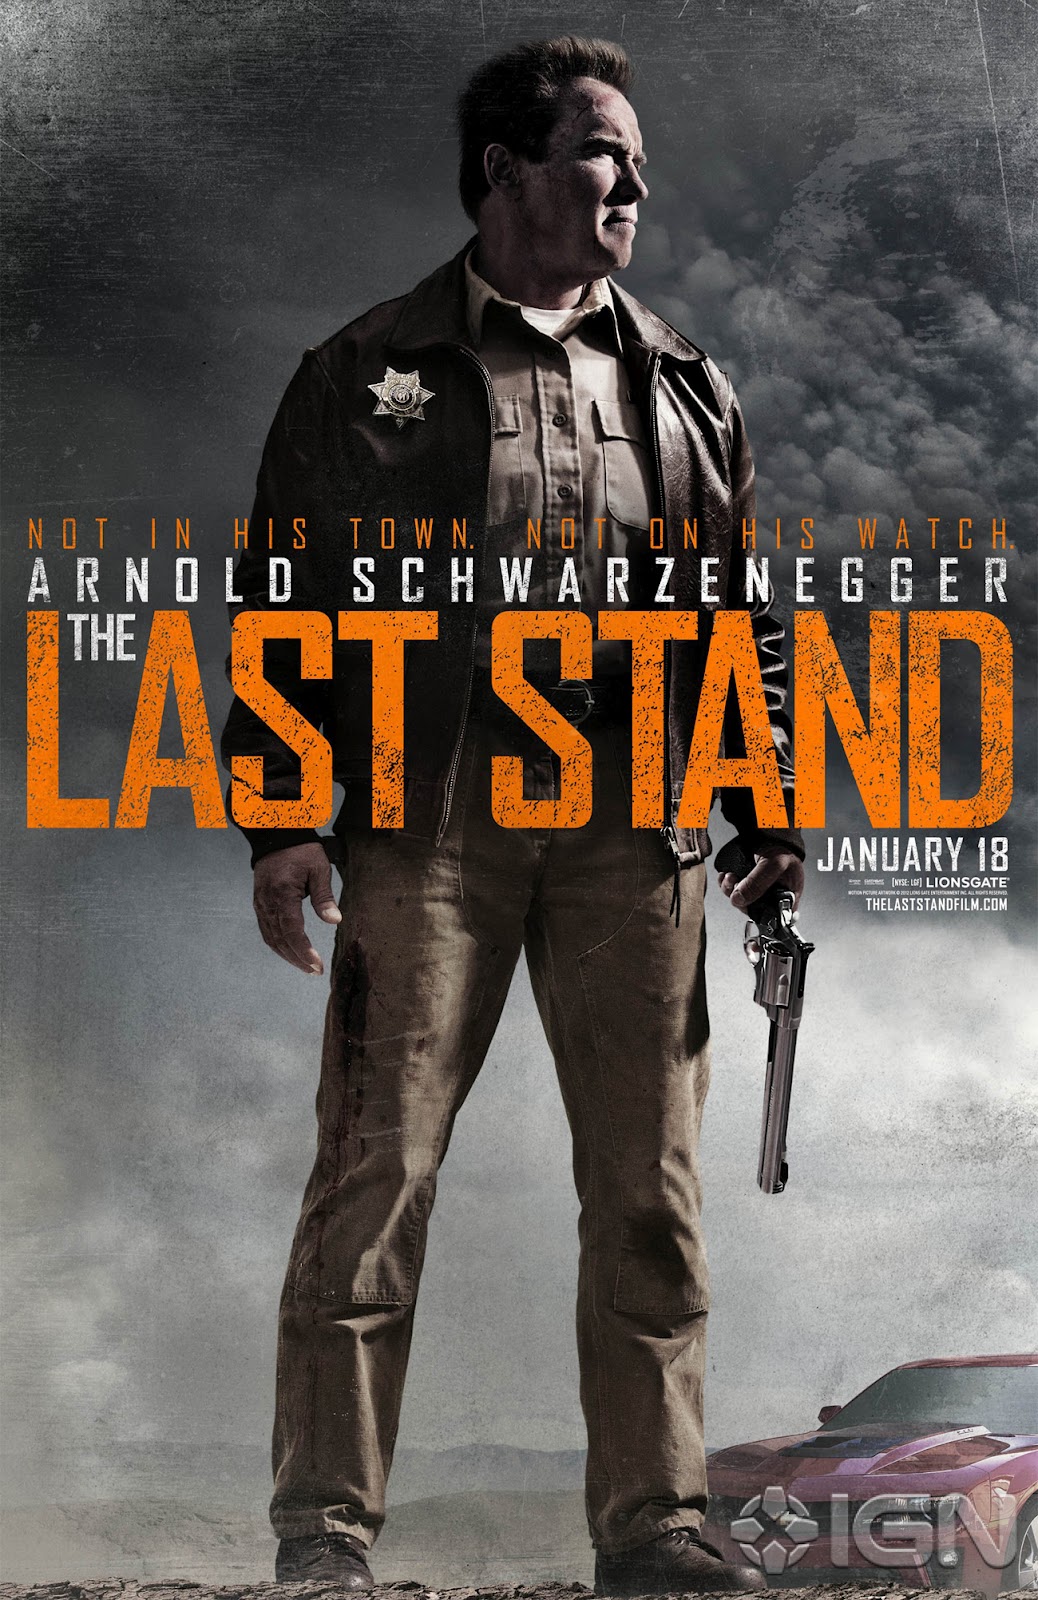 http://2.bp.blogspot.com/-N5_uT97ETaQ/UCrG-bAr6kI/AAAAAAAA4RE/3sAtjmZLr4c/s1600/Arnold_Schwarzenegger-The-Last-Stand-Poster.jpg